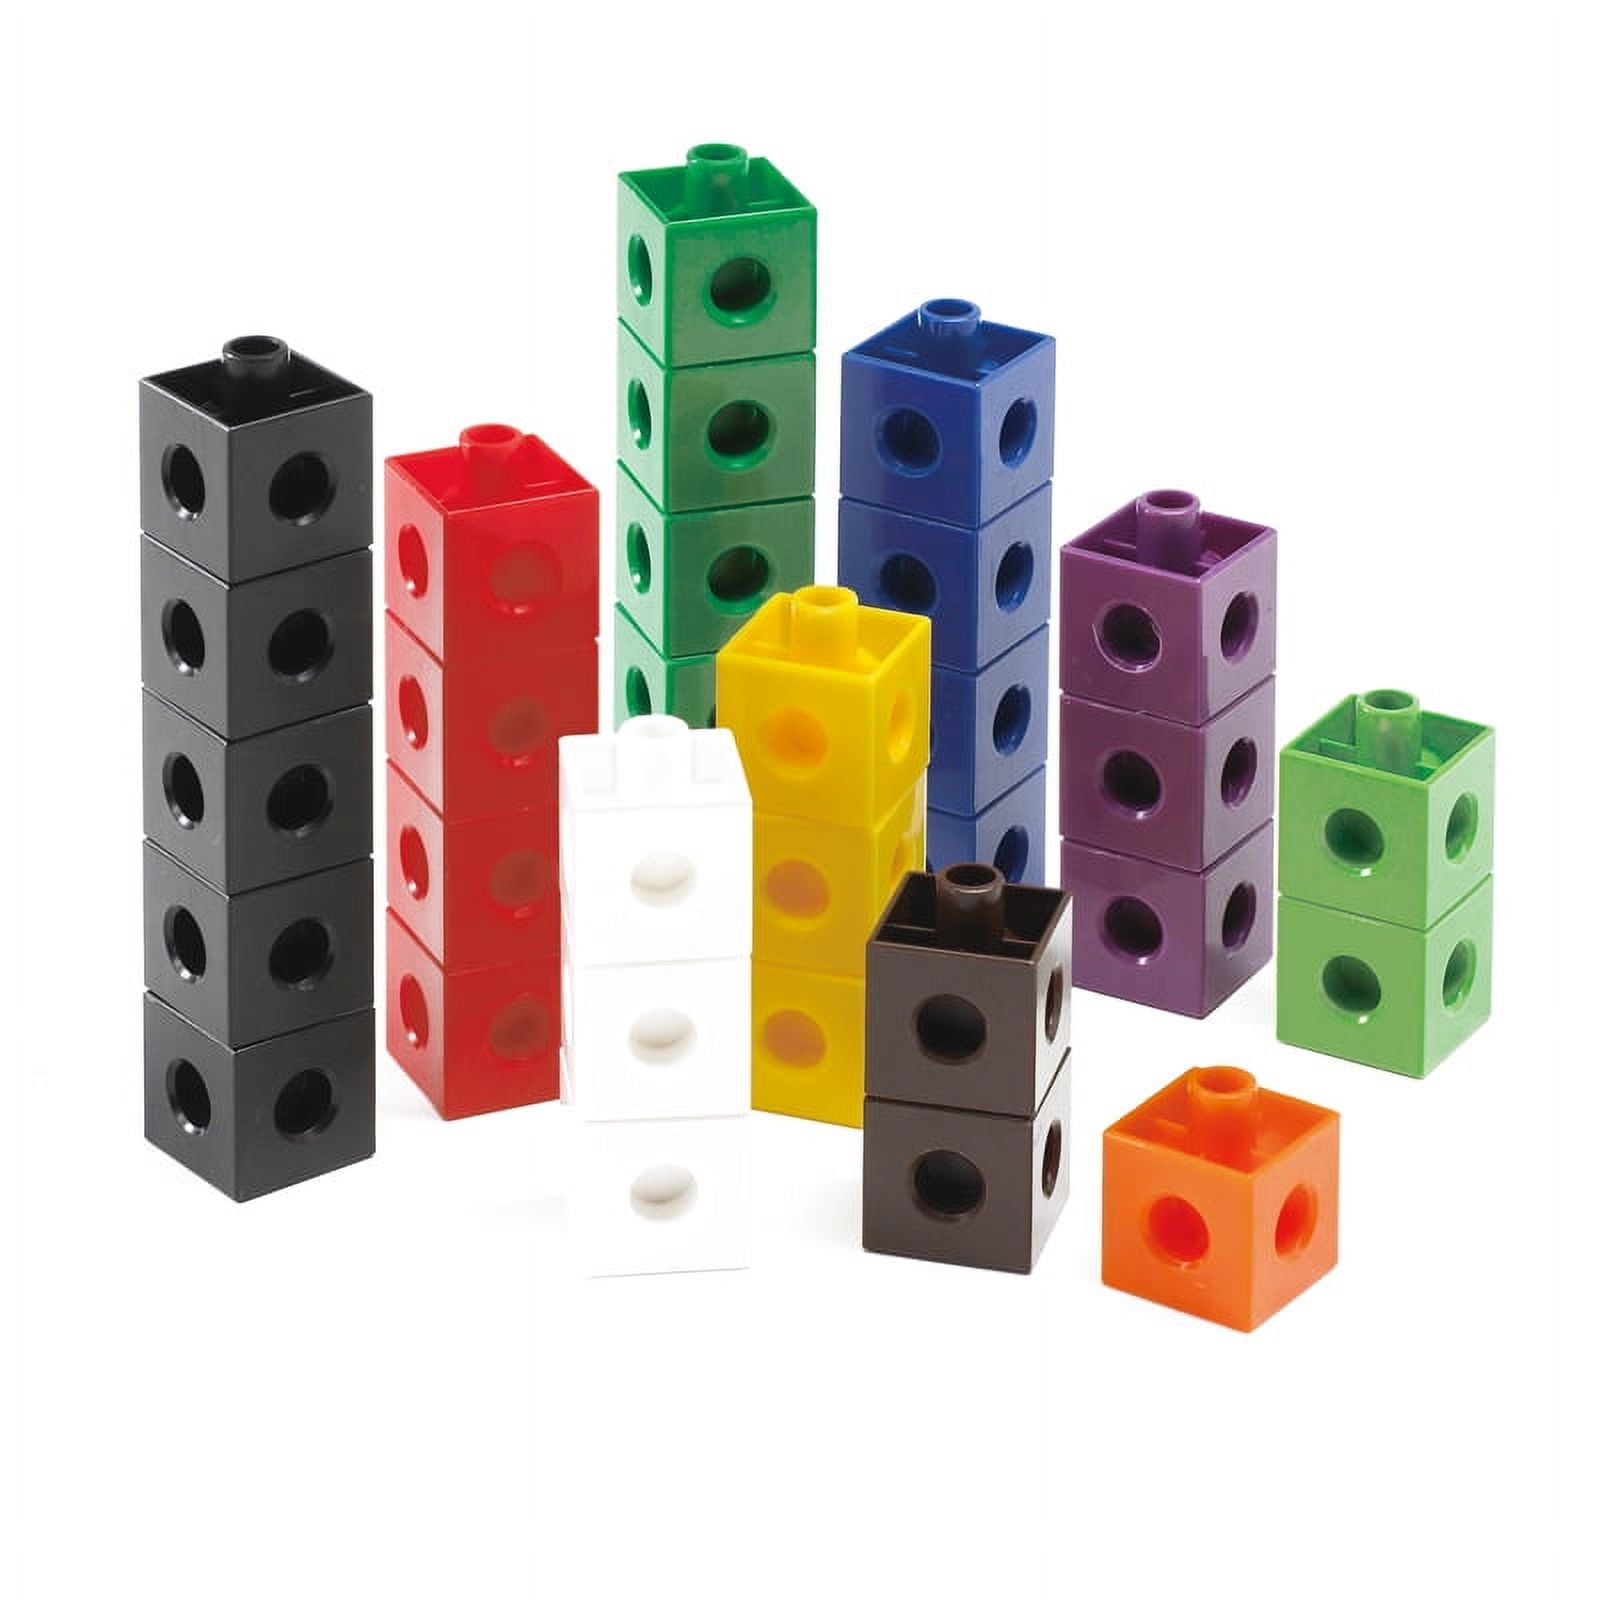 Plastic Cube , 2cm, Set of 100